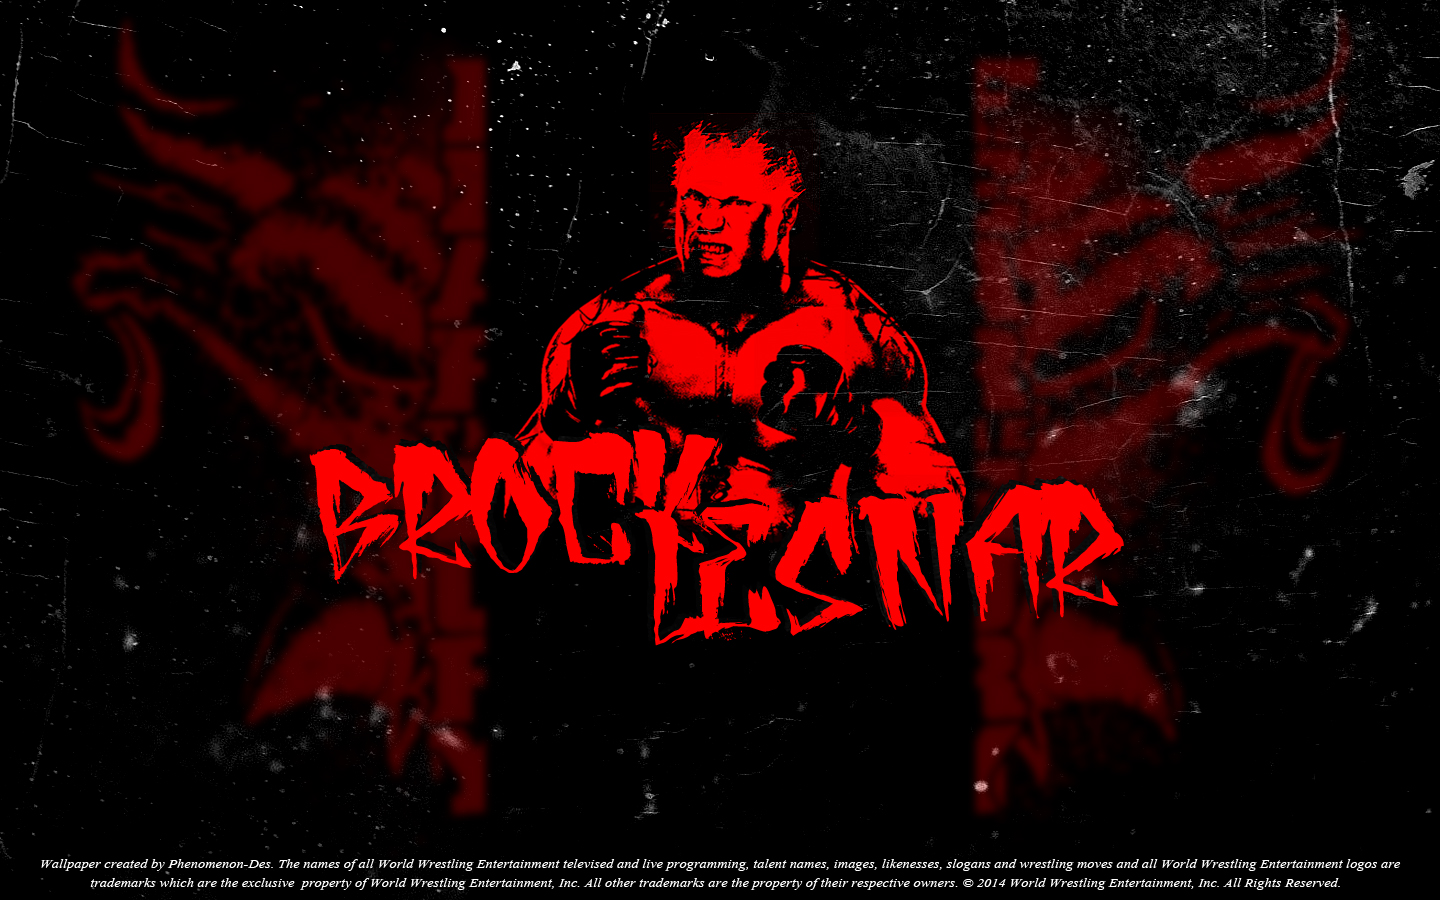 Wwe Brock Lesnar Wallpaper By Phenomenon Des